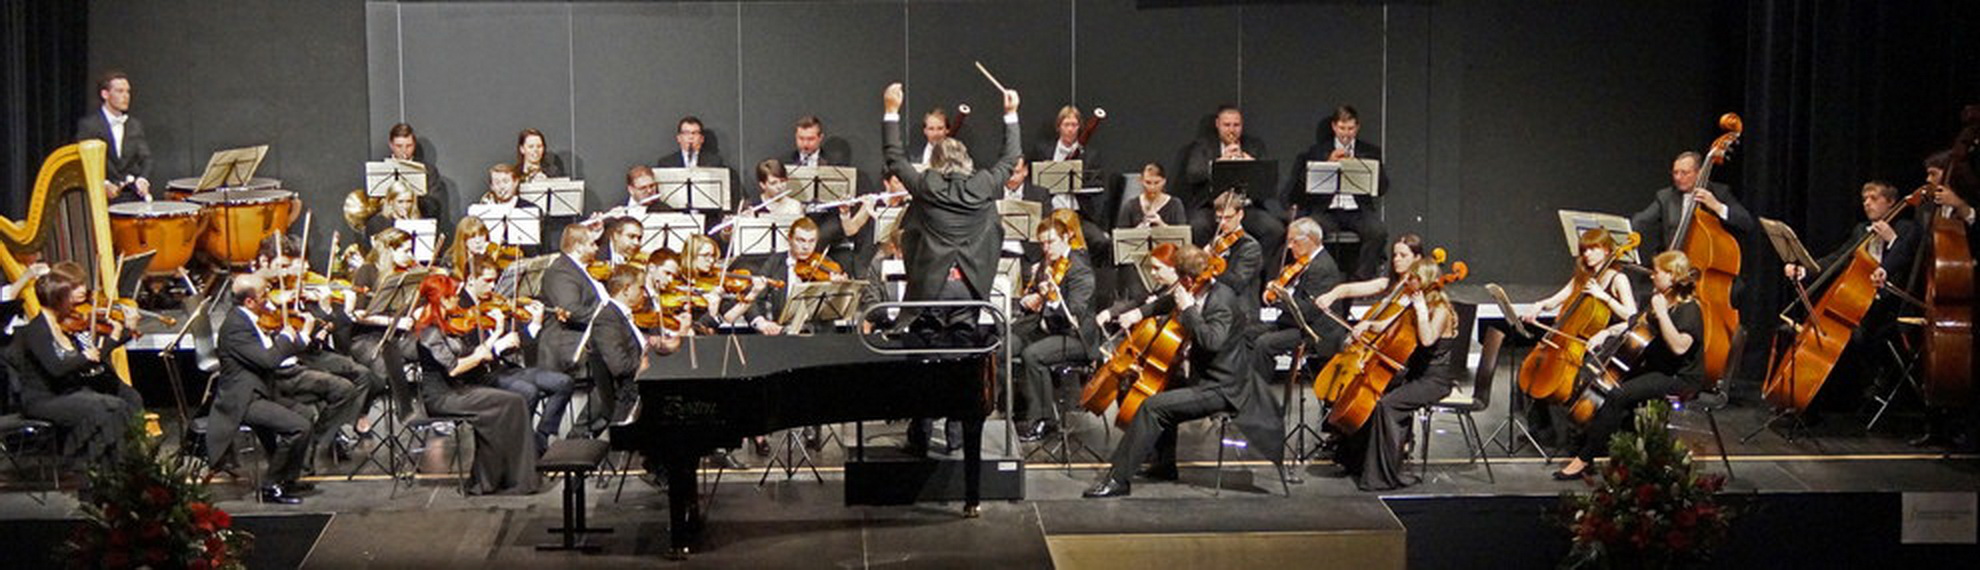 Die Smetana Philharmoniker unter Leitung von Hans Richter bei der Aufführung von Max Regers "Mozart-Variationen" am 23. April 2016 in der Neunburger Schwarzachtalhalle. Foto: Udo Weiß, NT